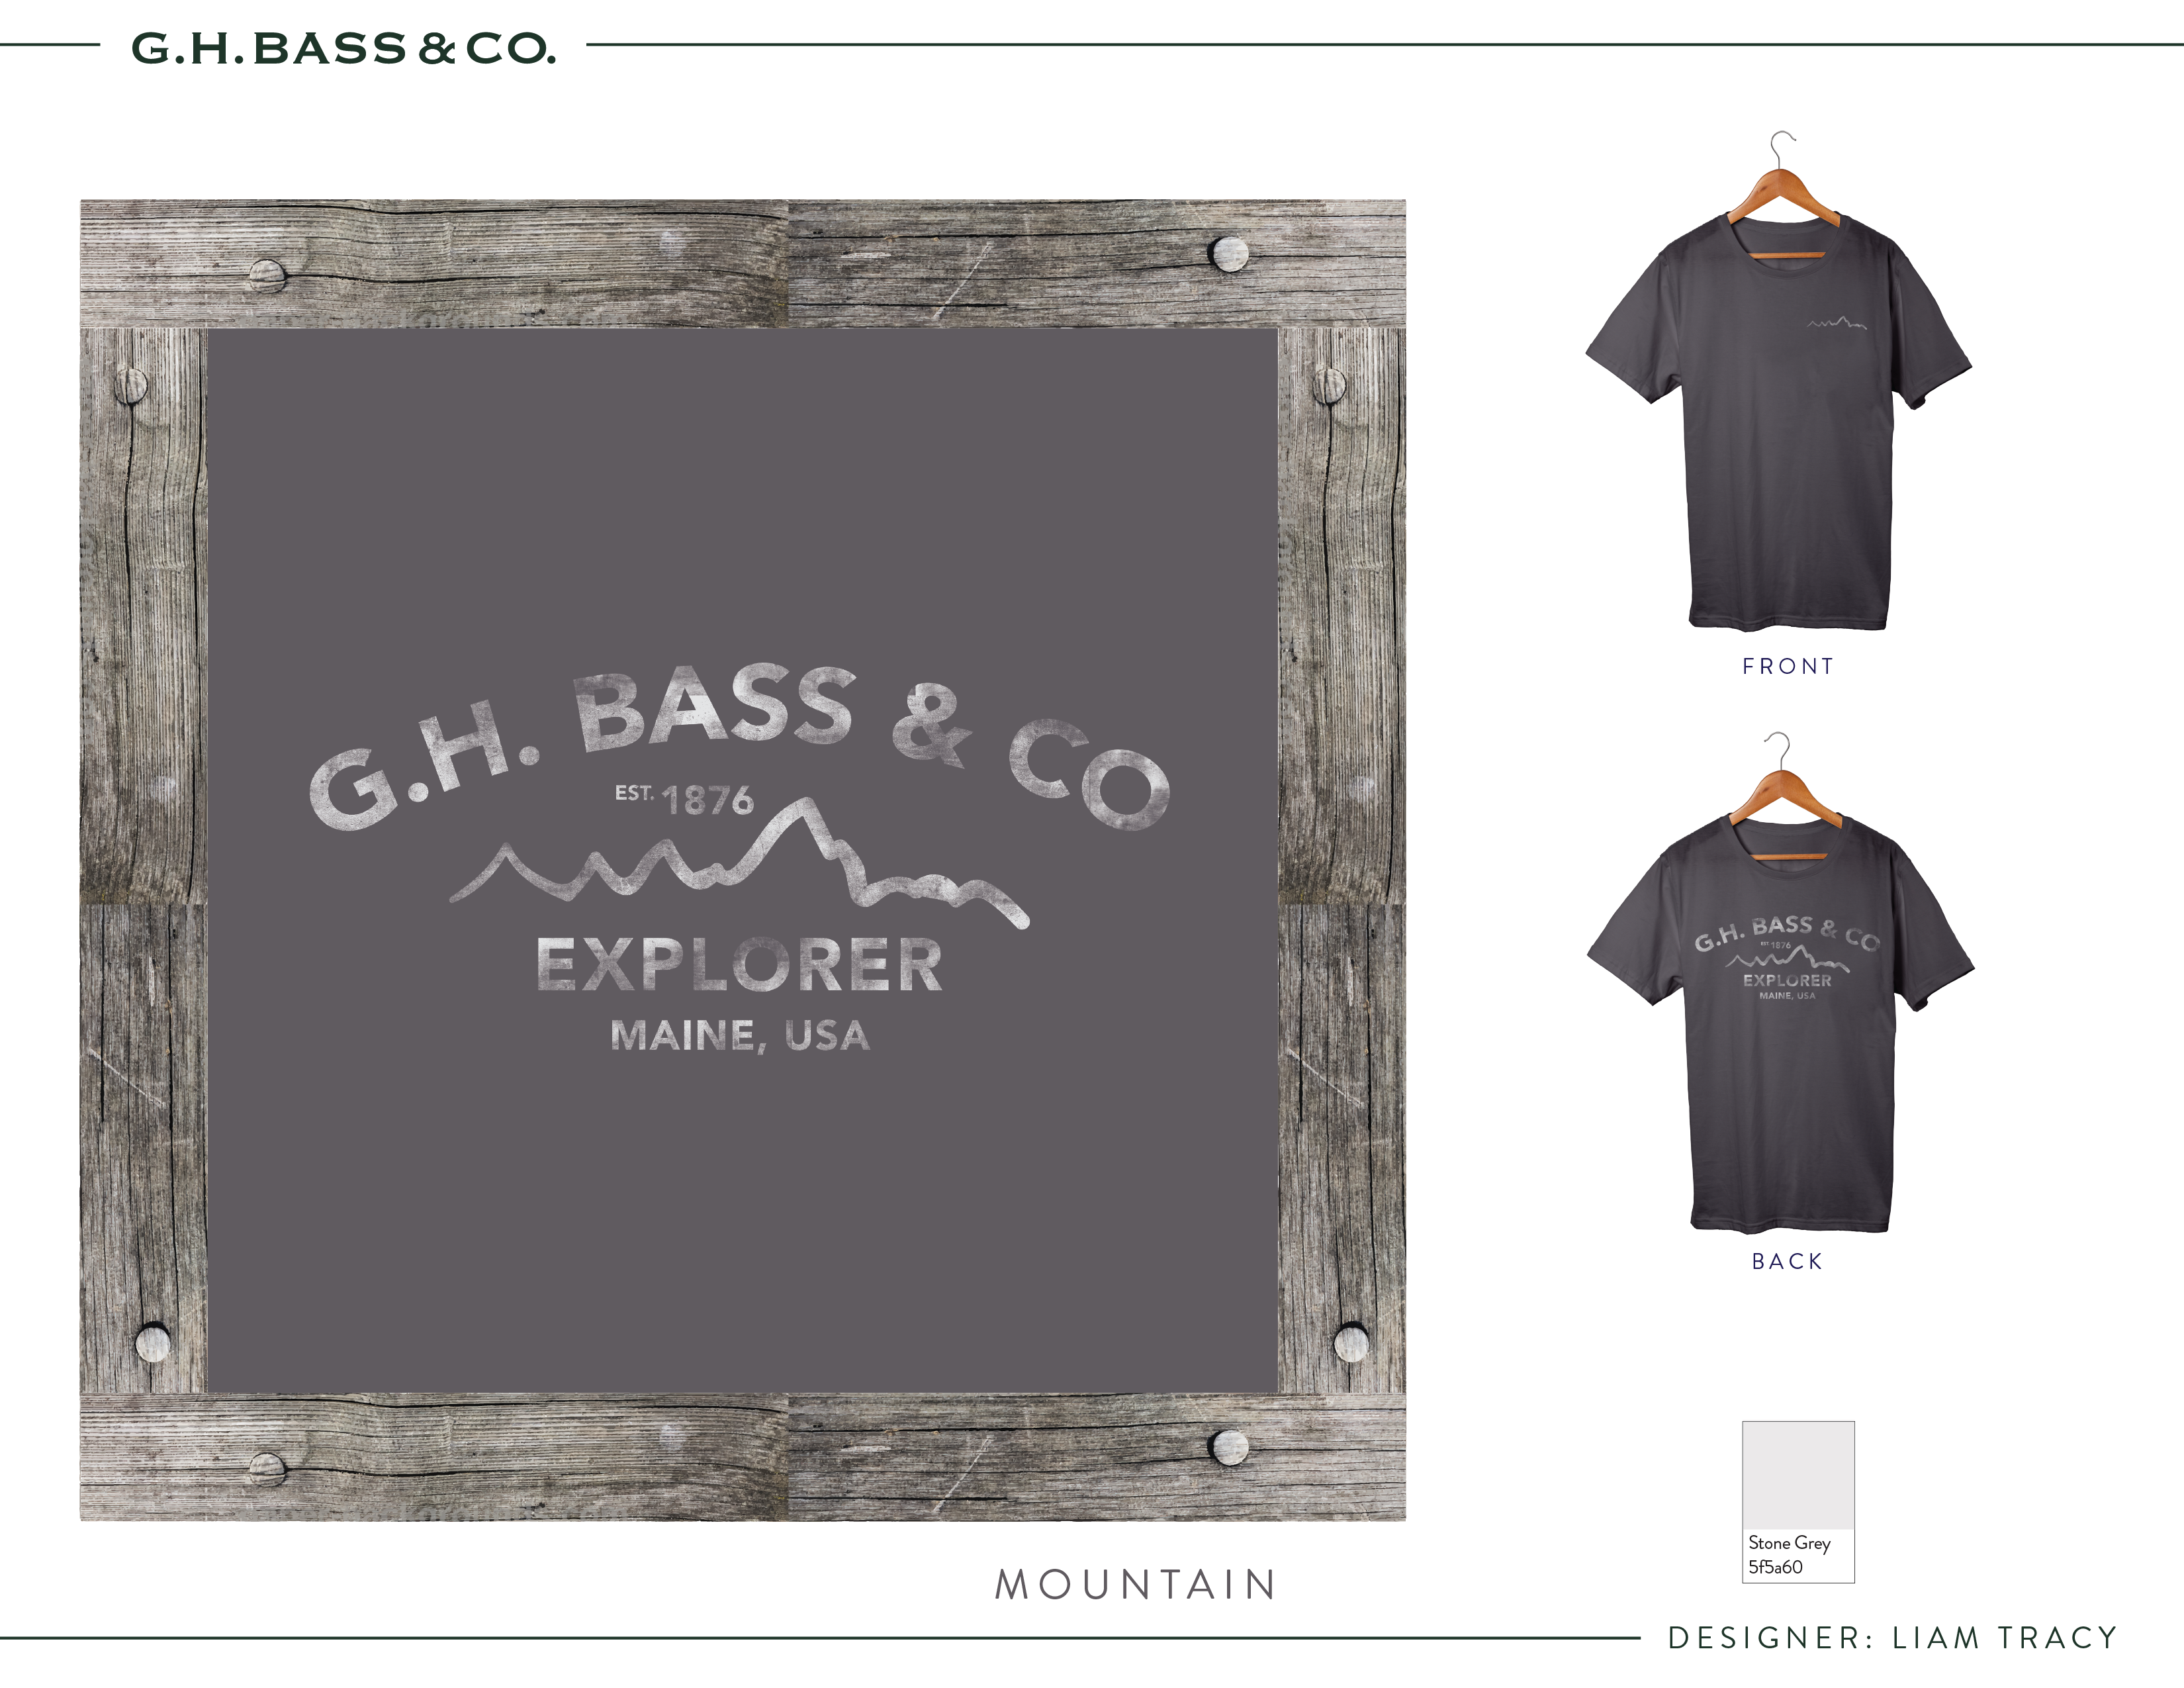 gh bass & co apparel